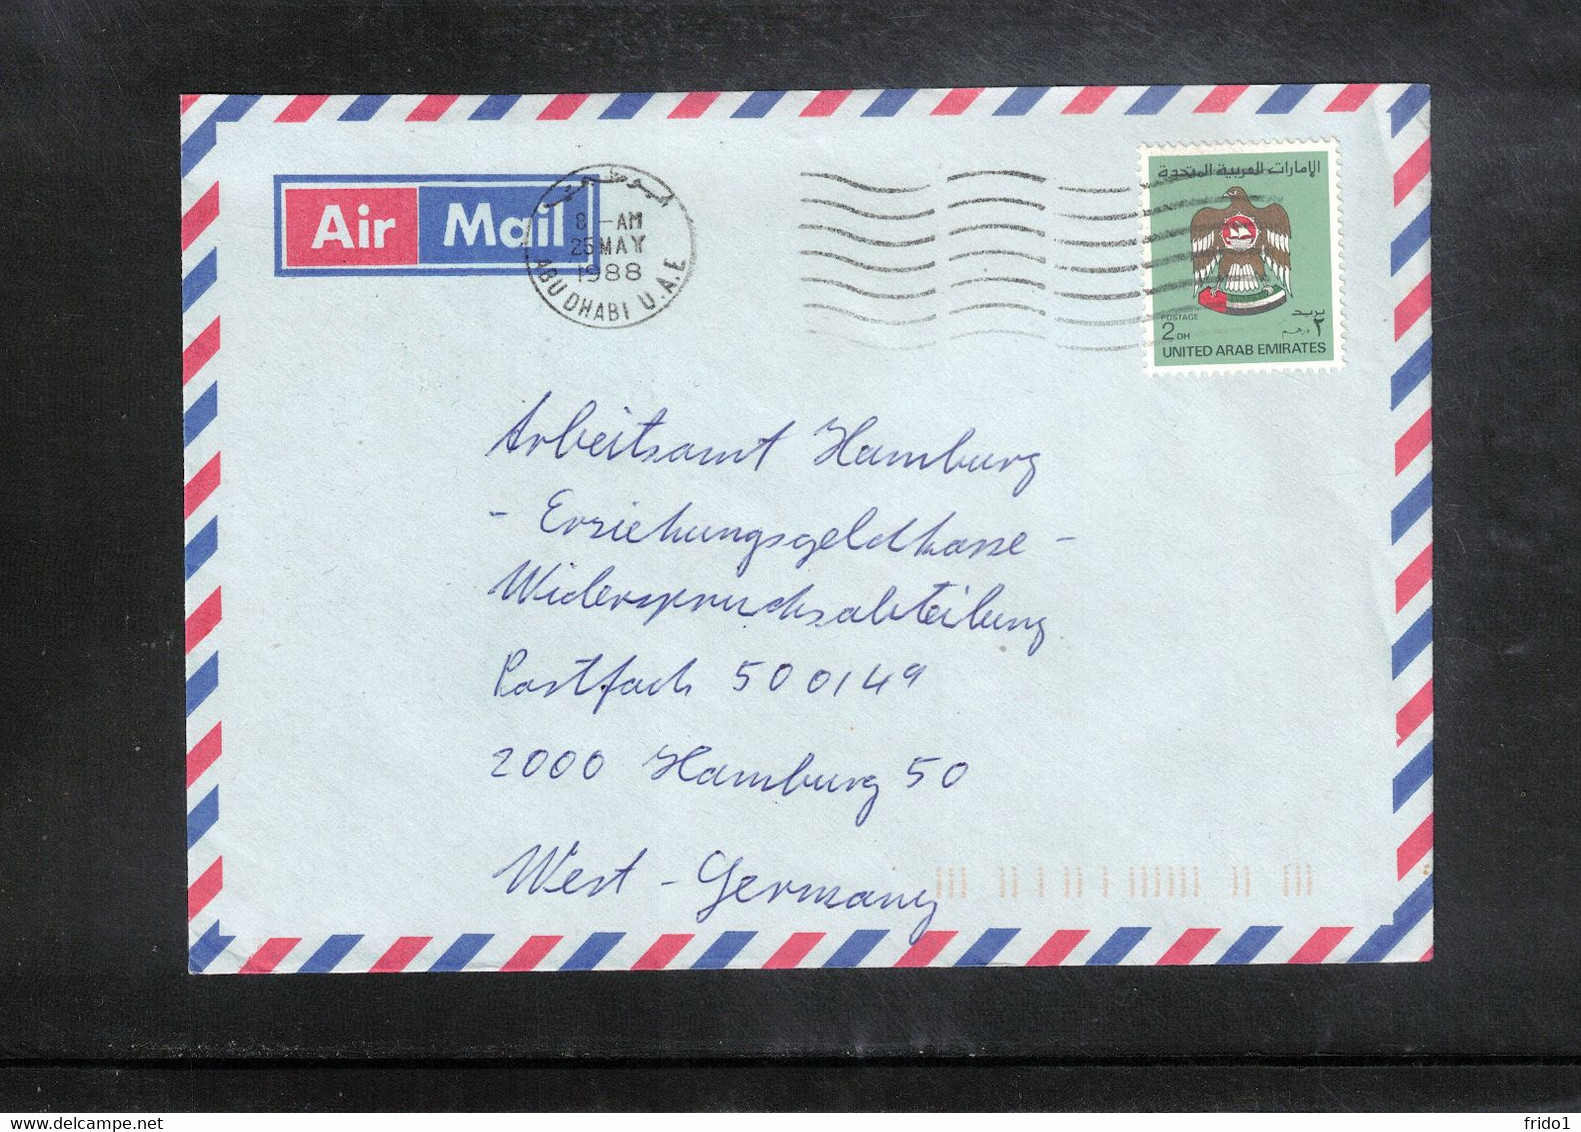 United Arab Emirates 1988 Interesting Airmail Letter - Abu Dhabi